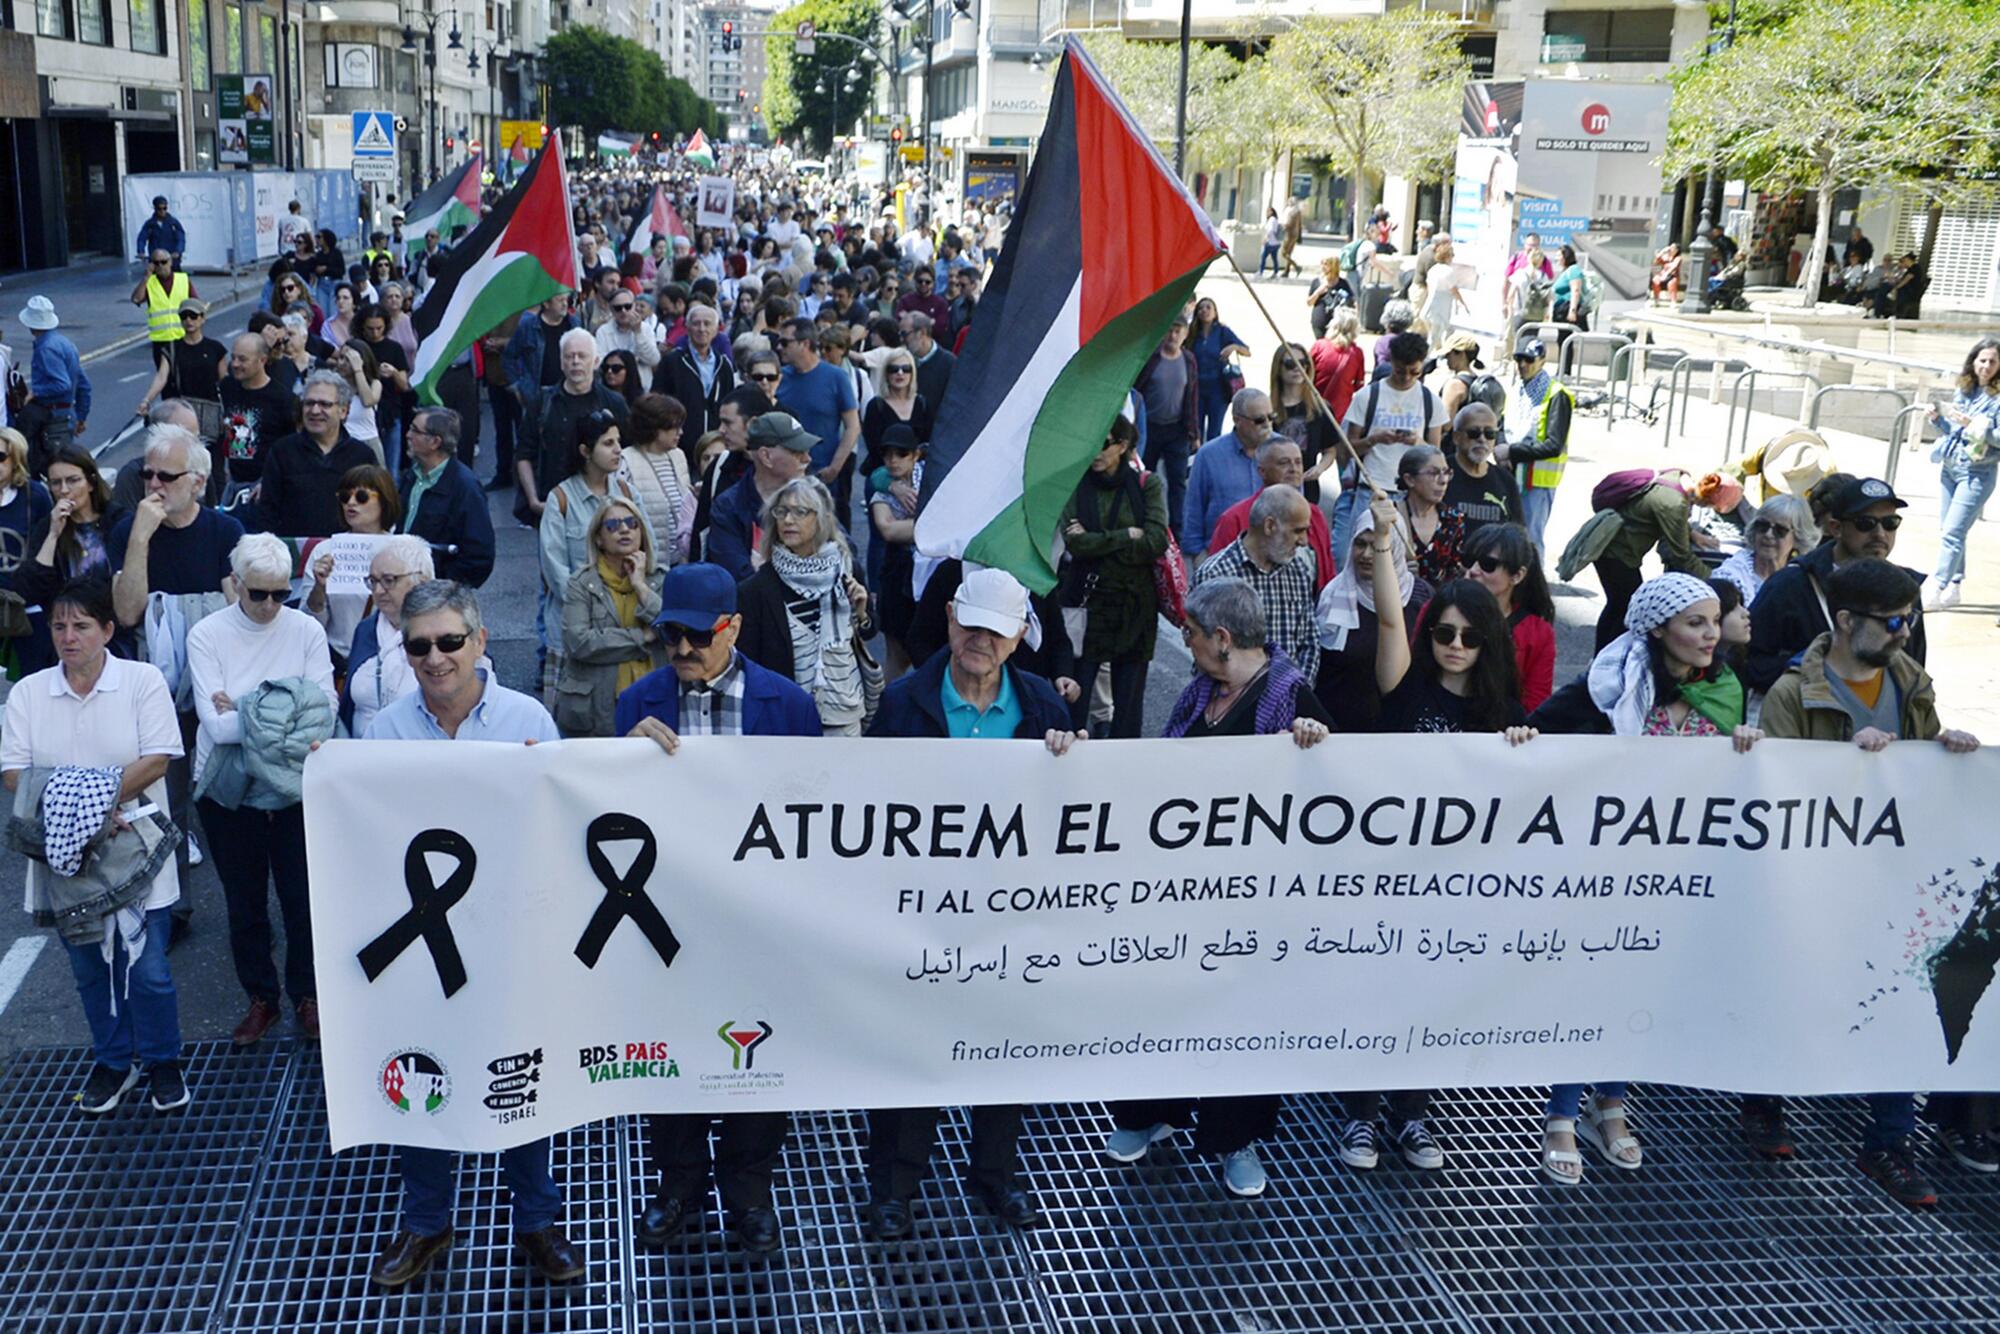 Manifestaciones País Valéncia solidaridad con Palestina 20-21 abril  - 2